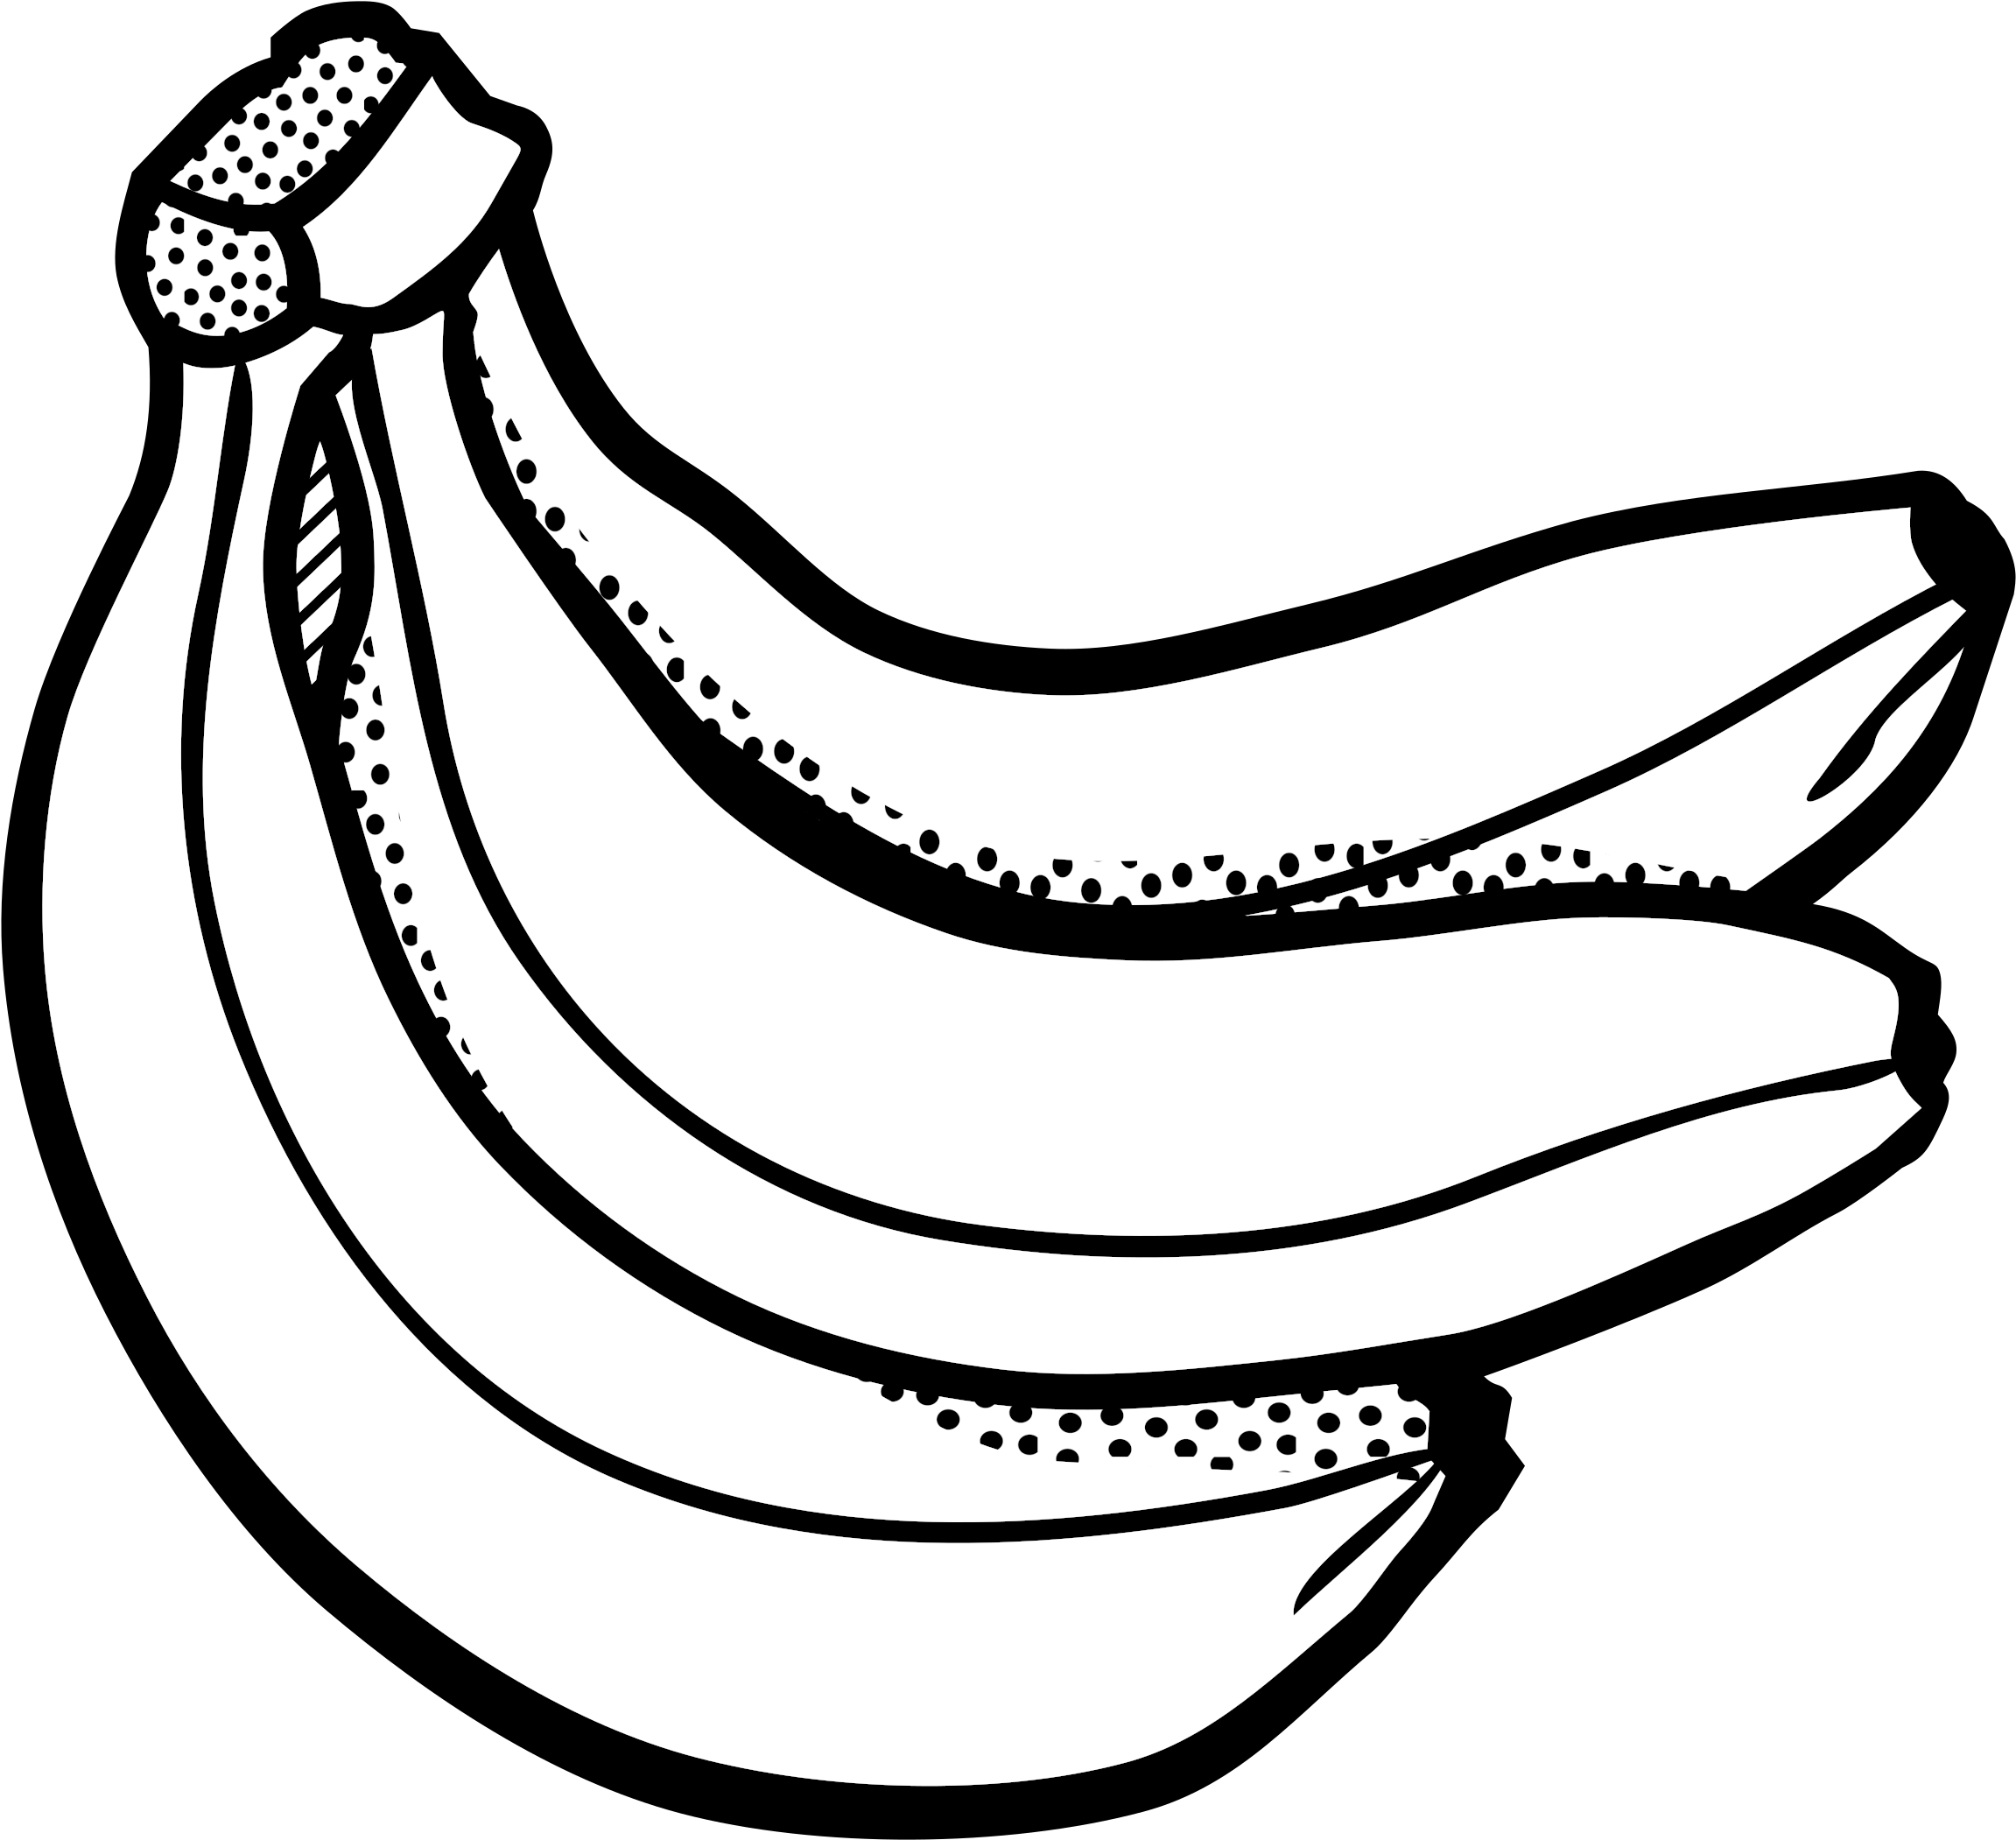 banana clipart drawing